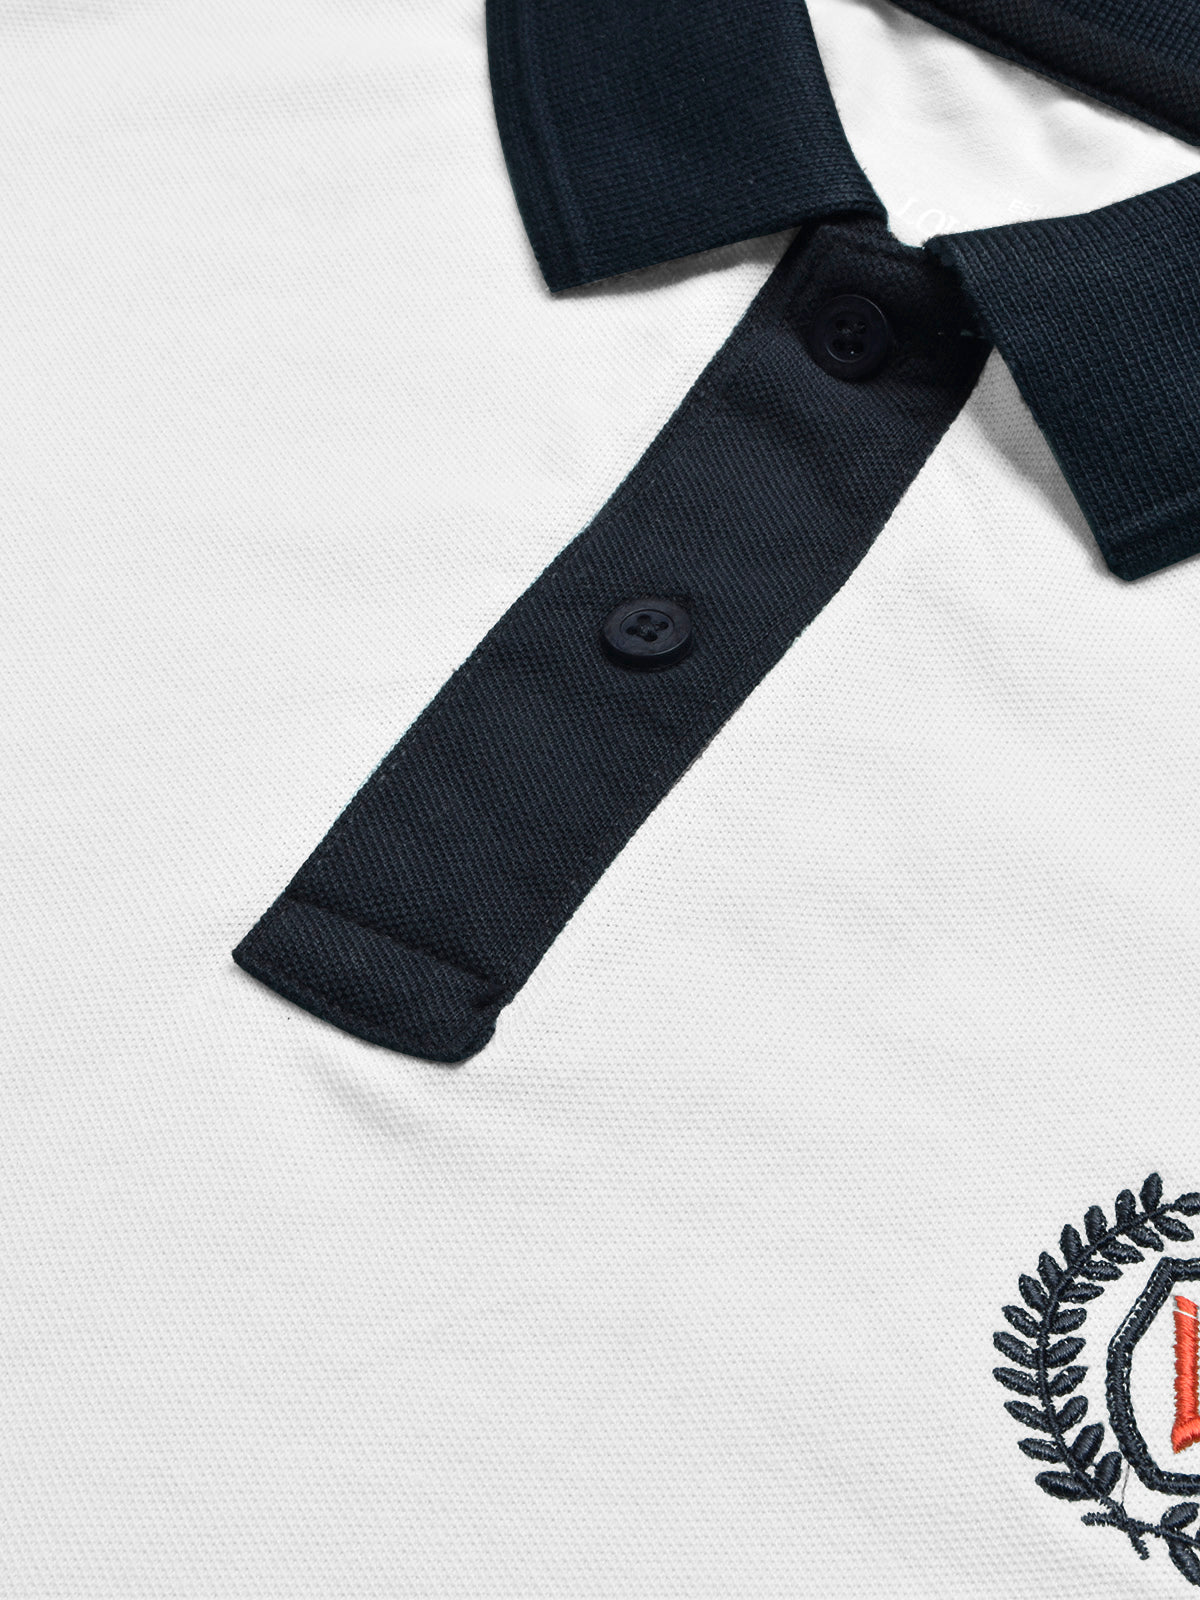 LV Summer Polo Shirt For Men-White & Dark Navy-SP1567/RT2370